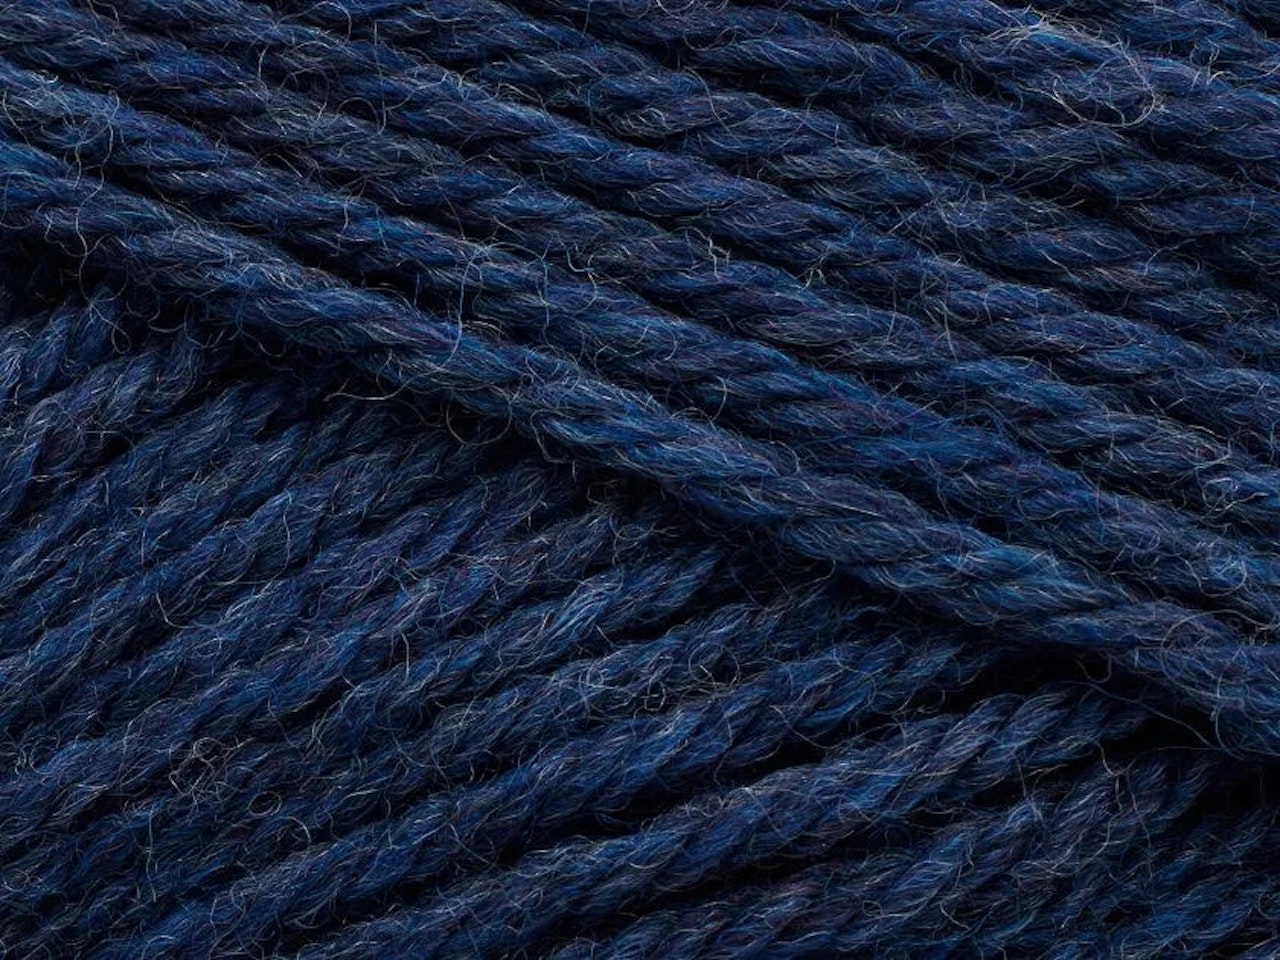 Peruvian highland wool-Fisherman blue 818